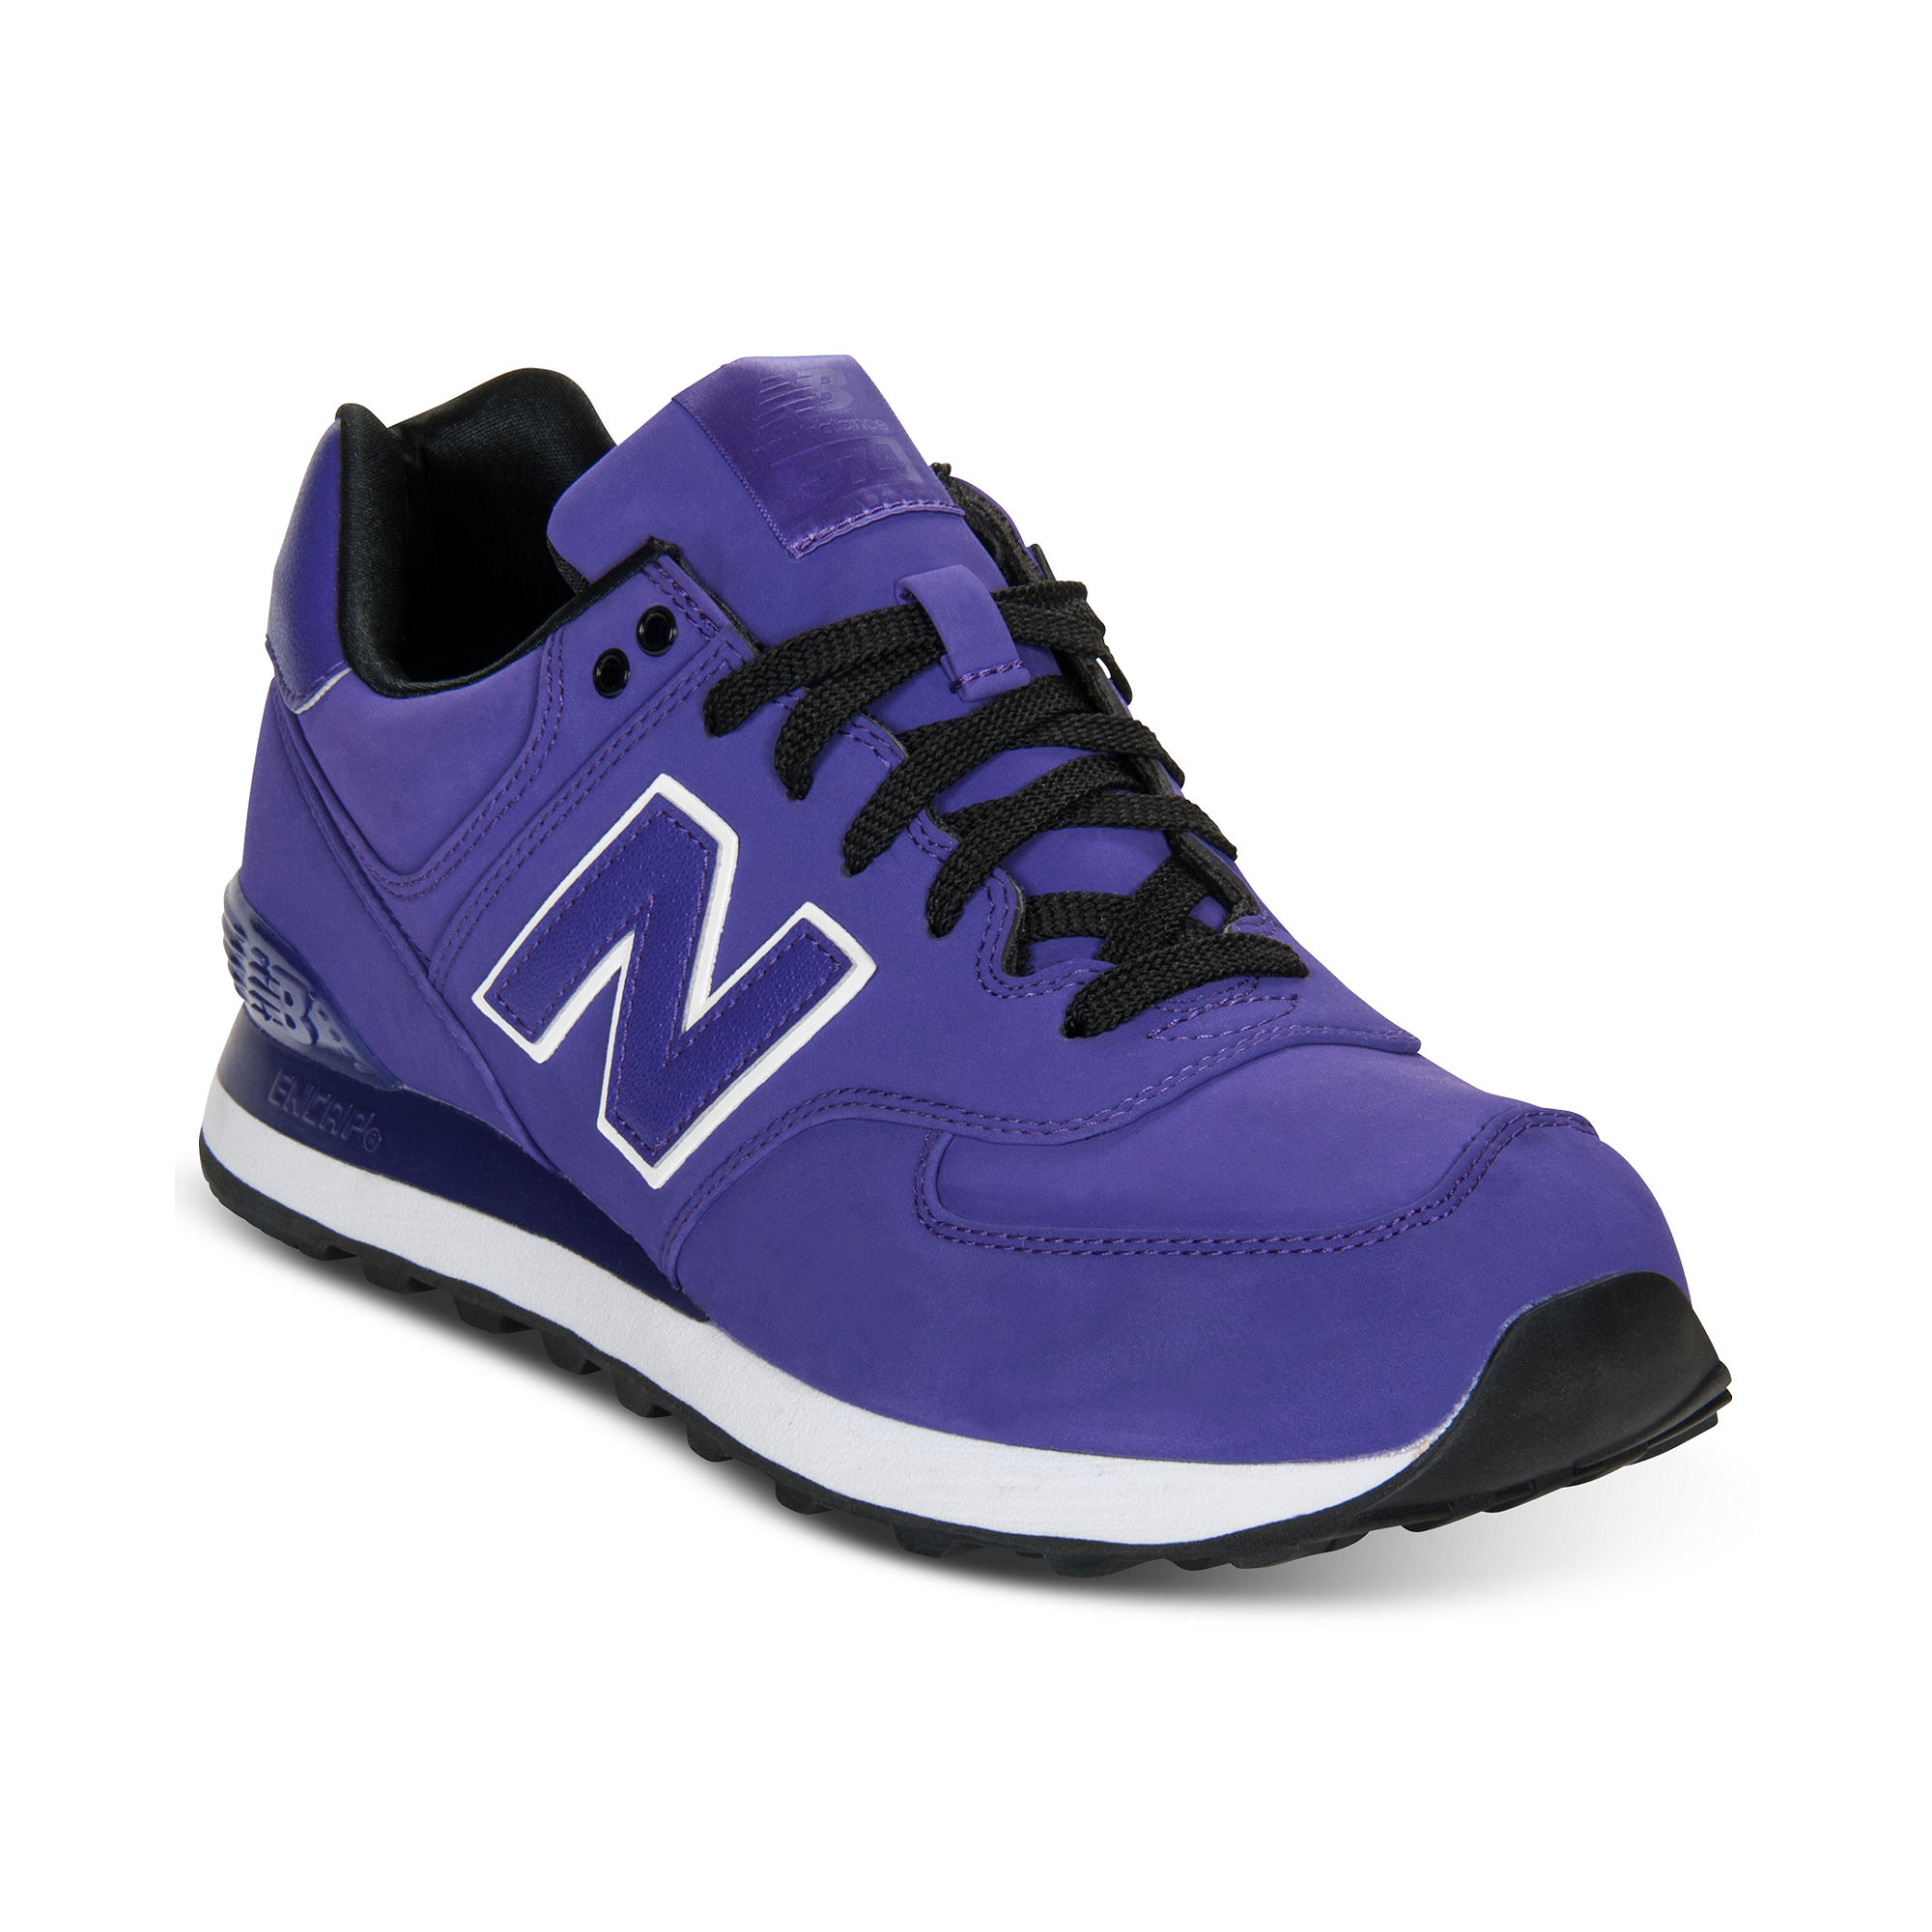 New Balance 574 Sneakers in Purple/Black (Purple) for Men ...